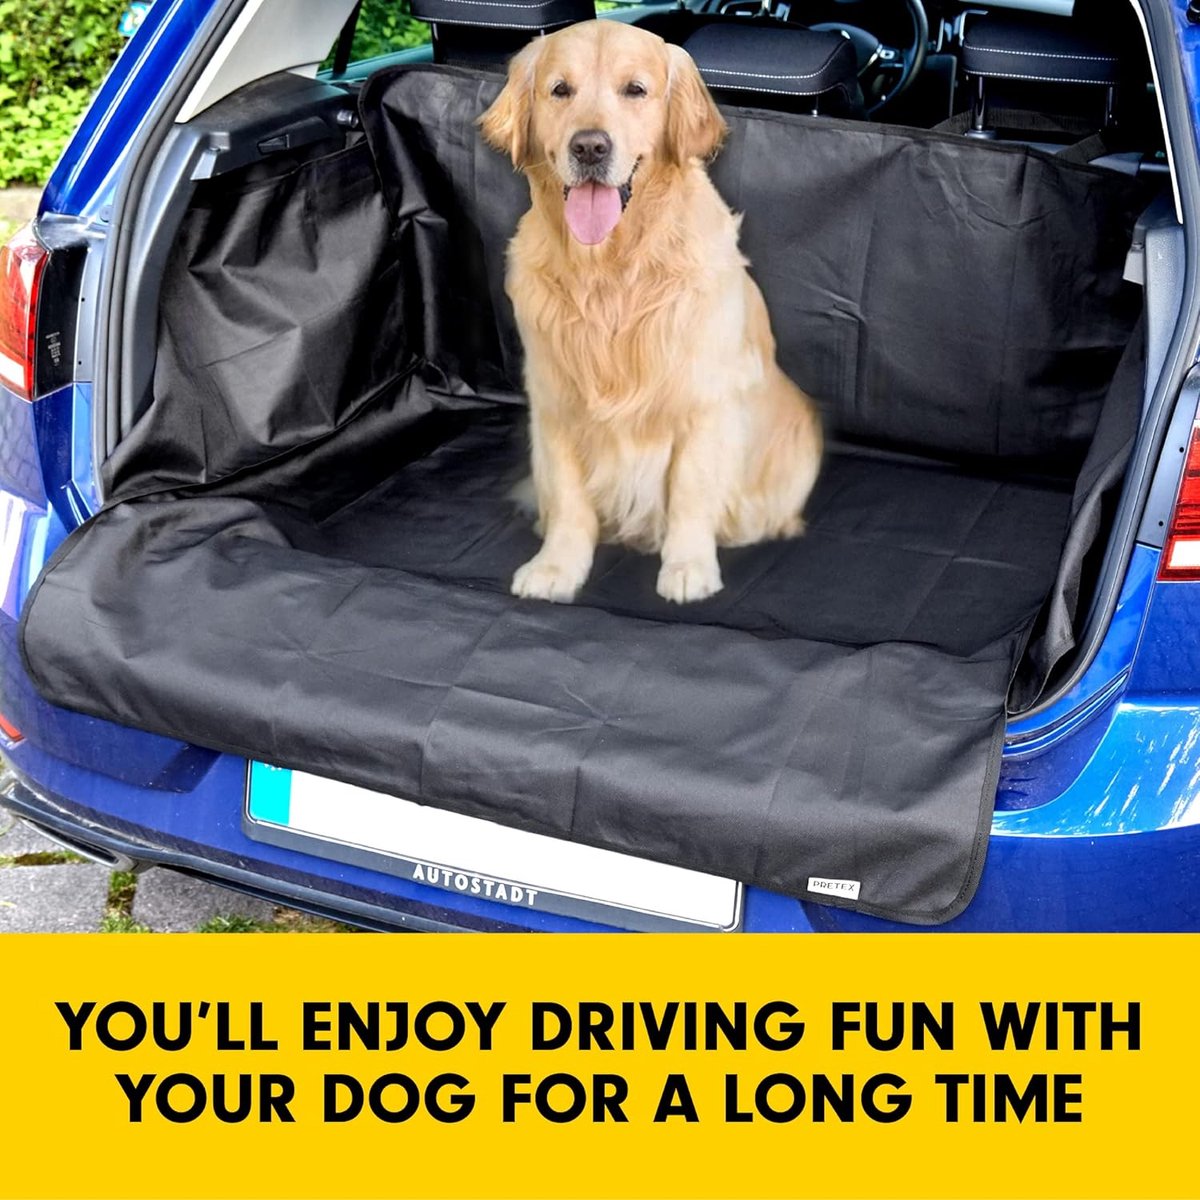 Panier de siège de voiture pour chien - ABC chiens